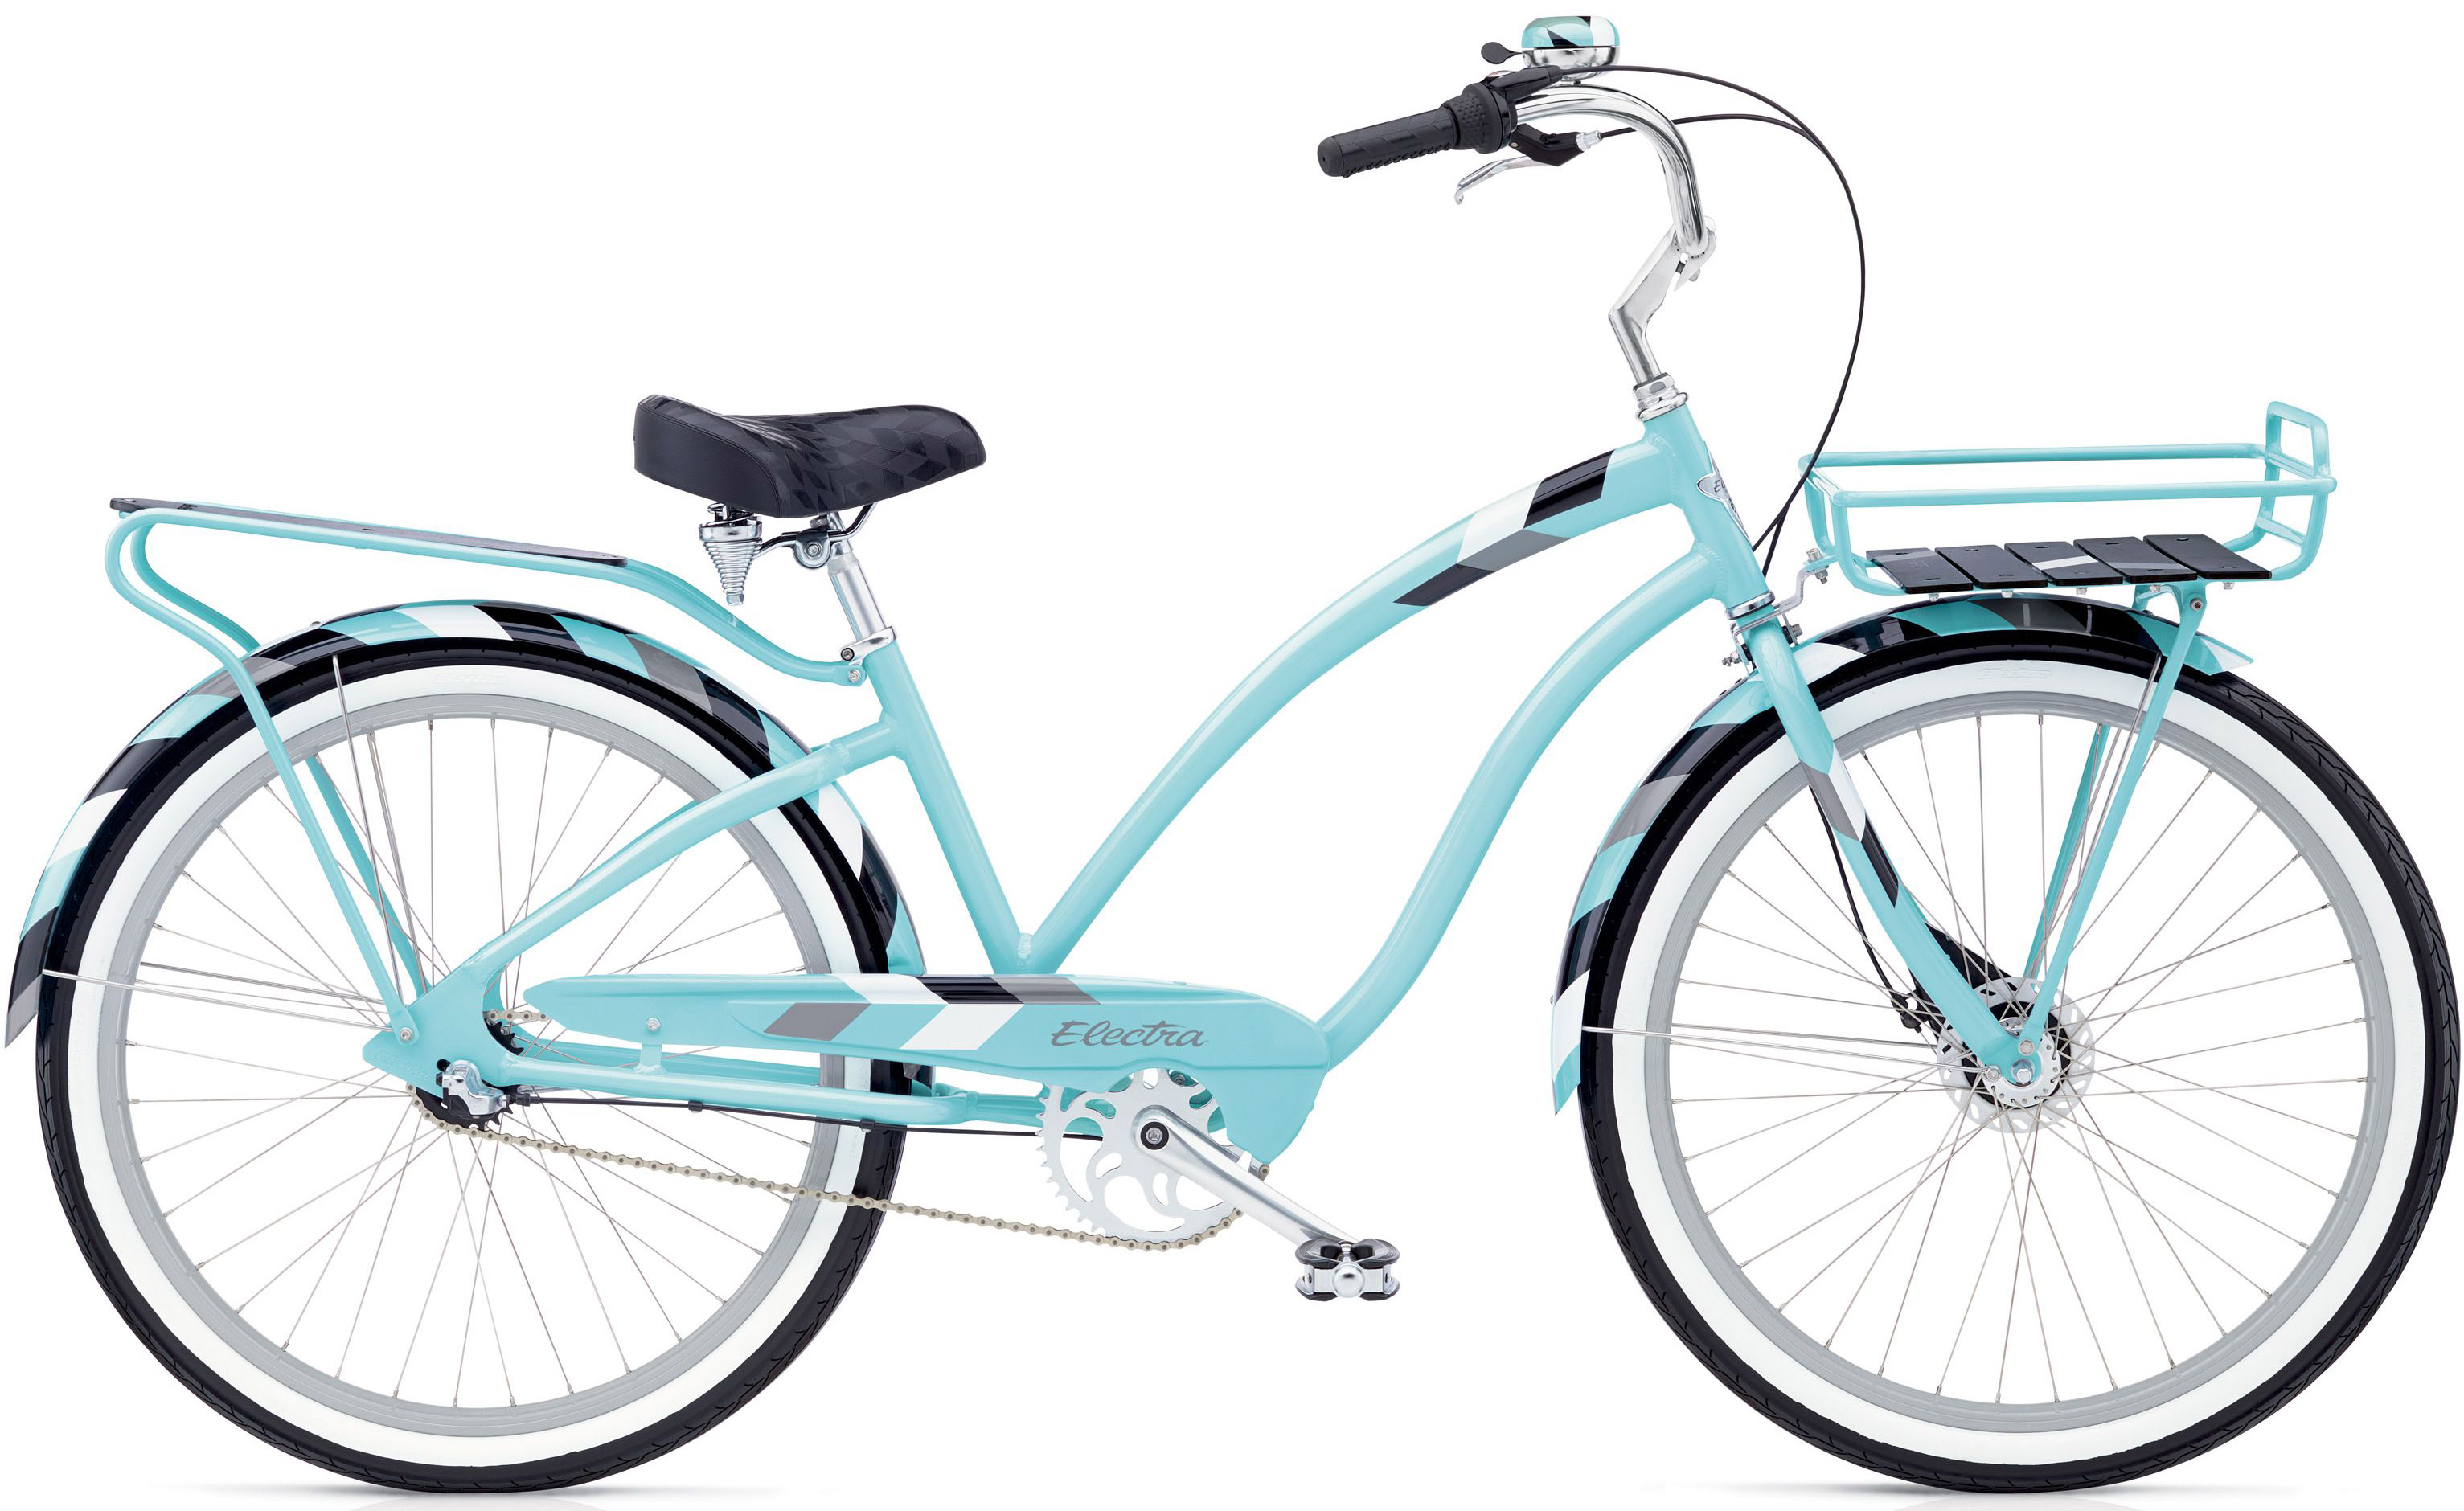  Отзывы о Женском велосипеде Electra Daydreamer 3i 2020